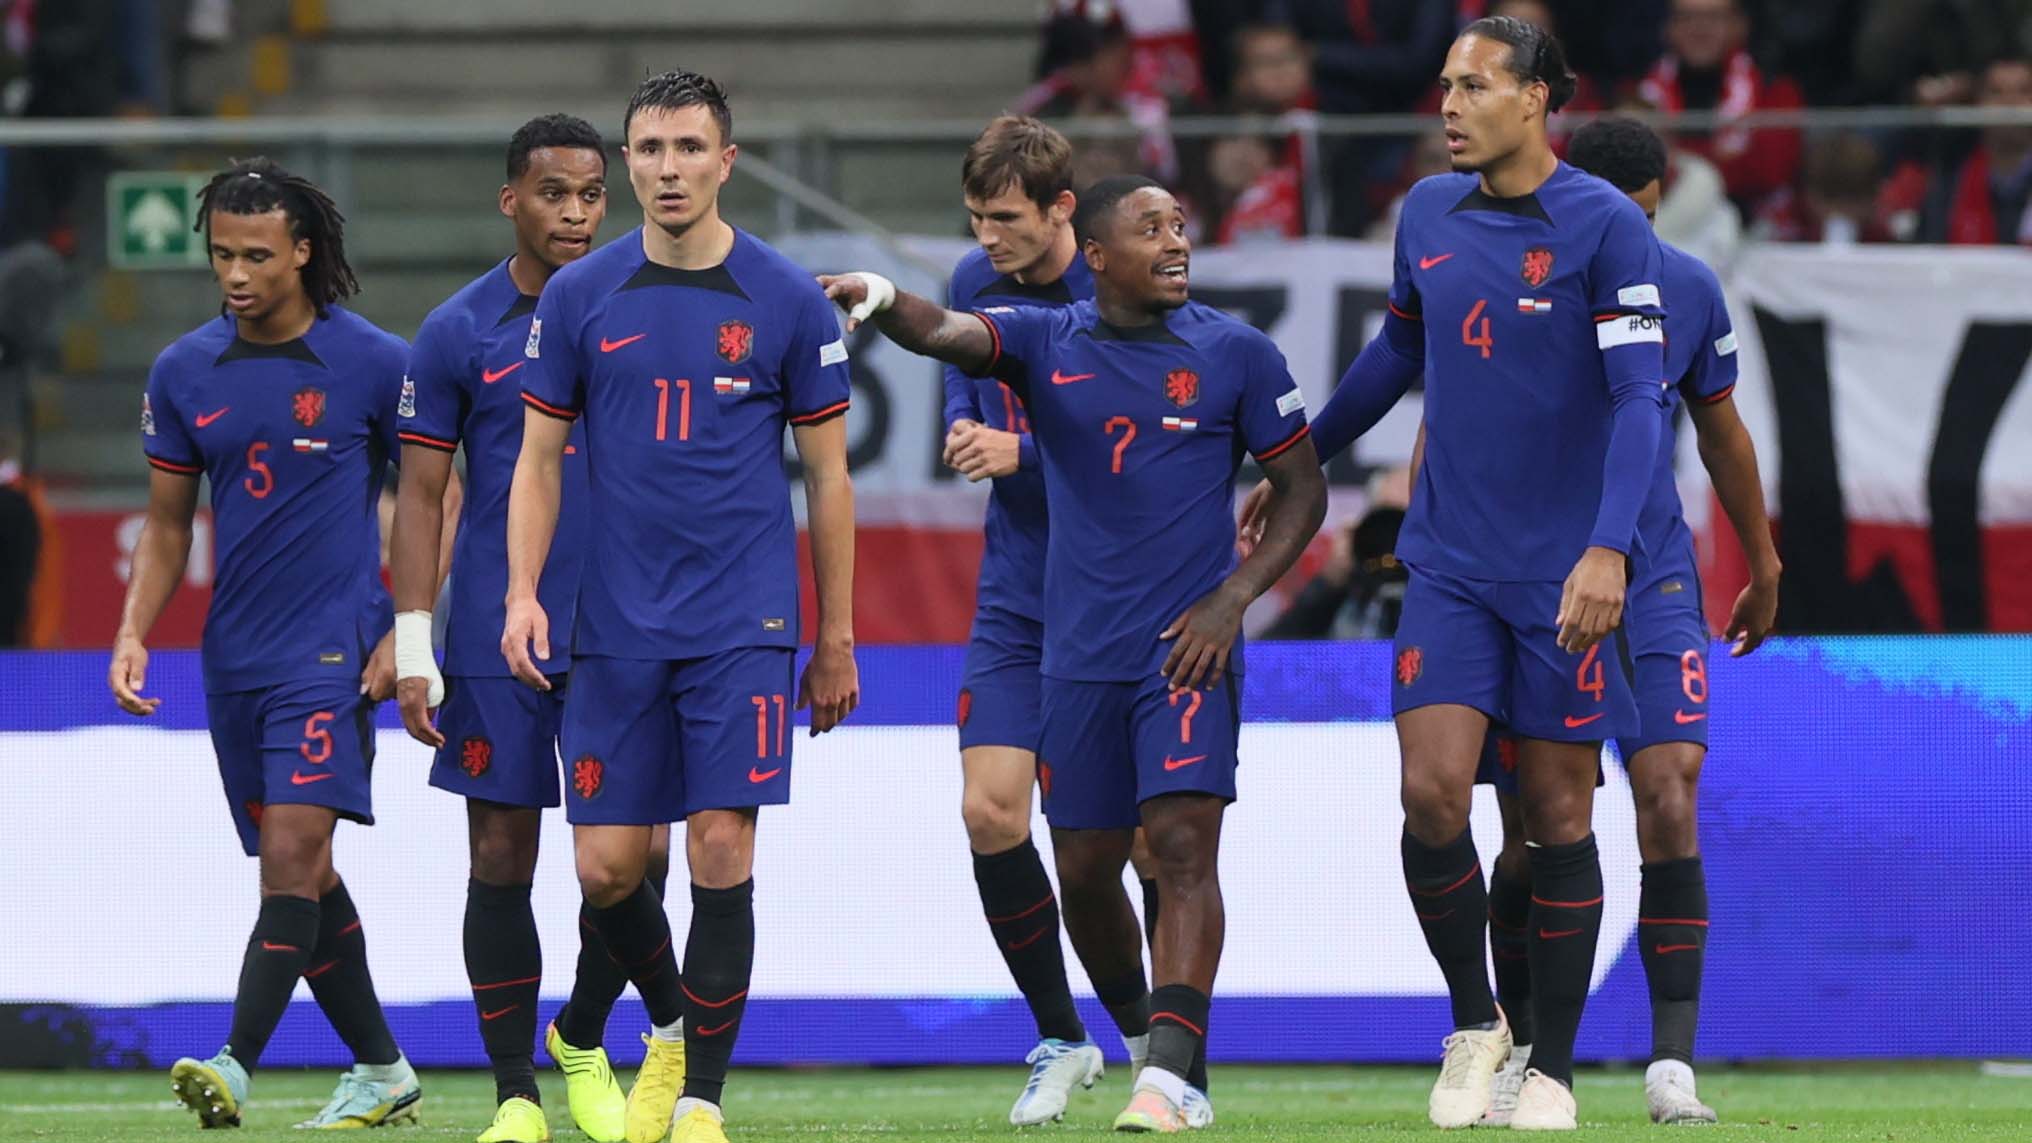 Holanda sigue invicto; Francia evitó el descenso, esto y más en la Nations League